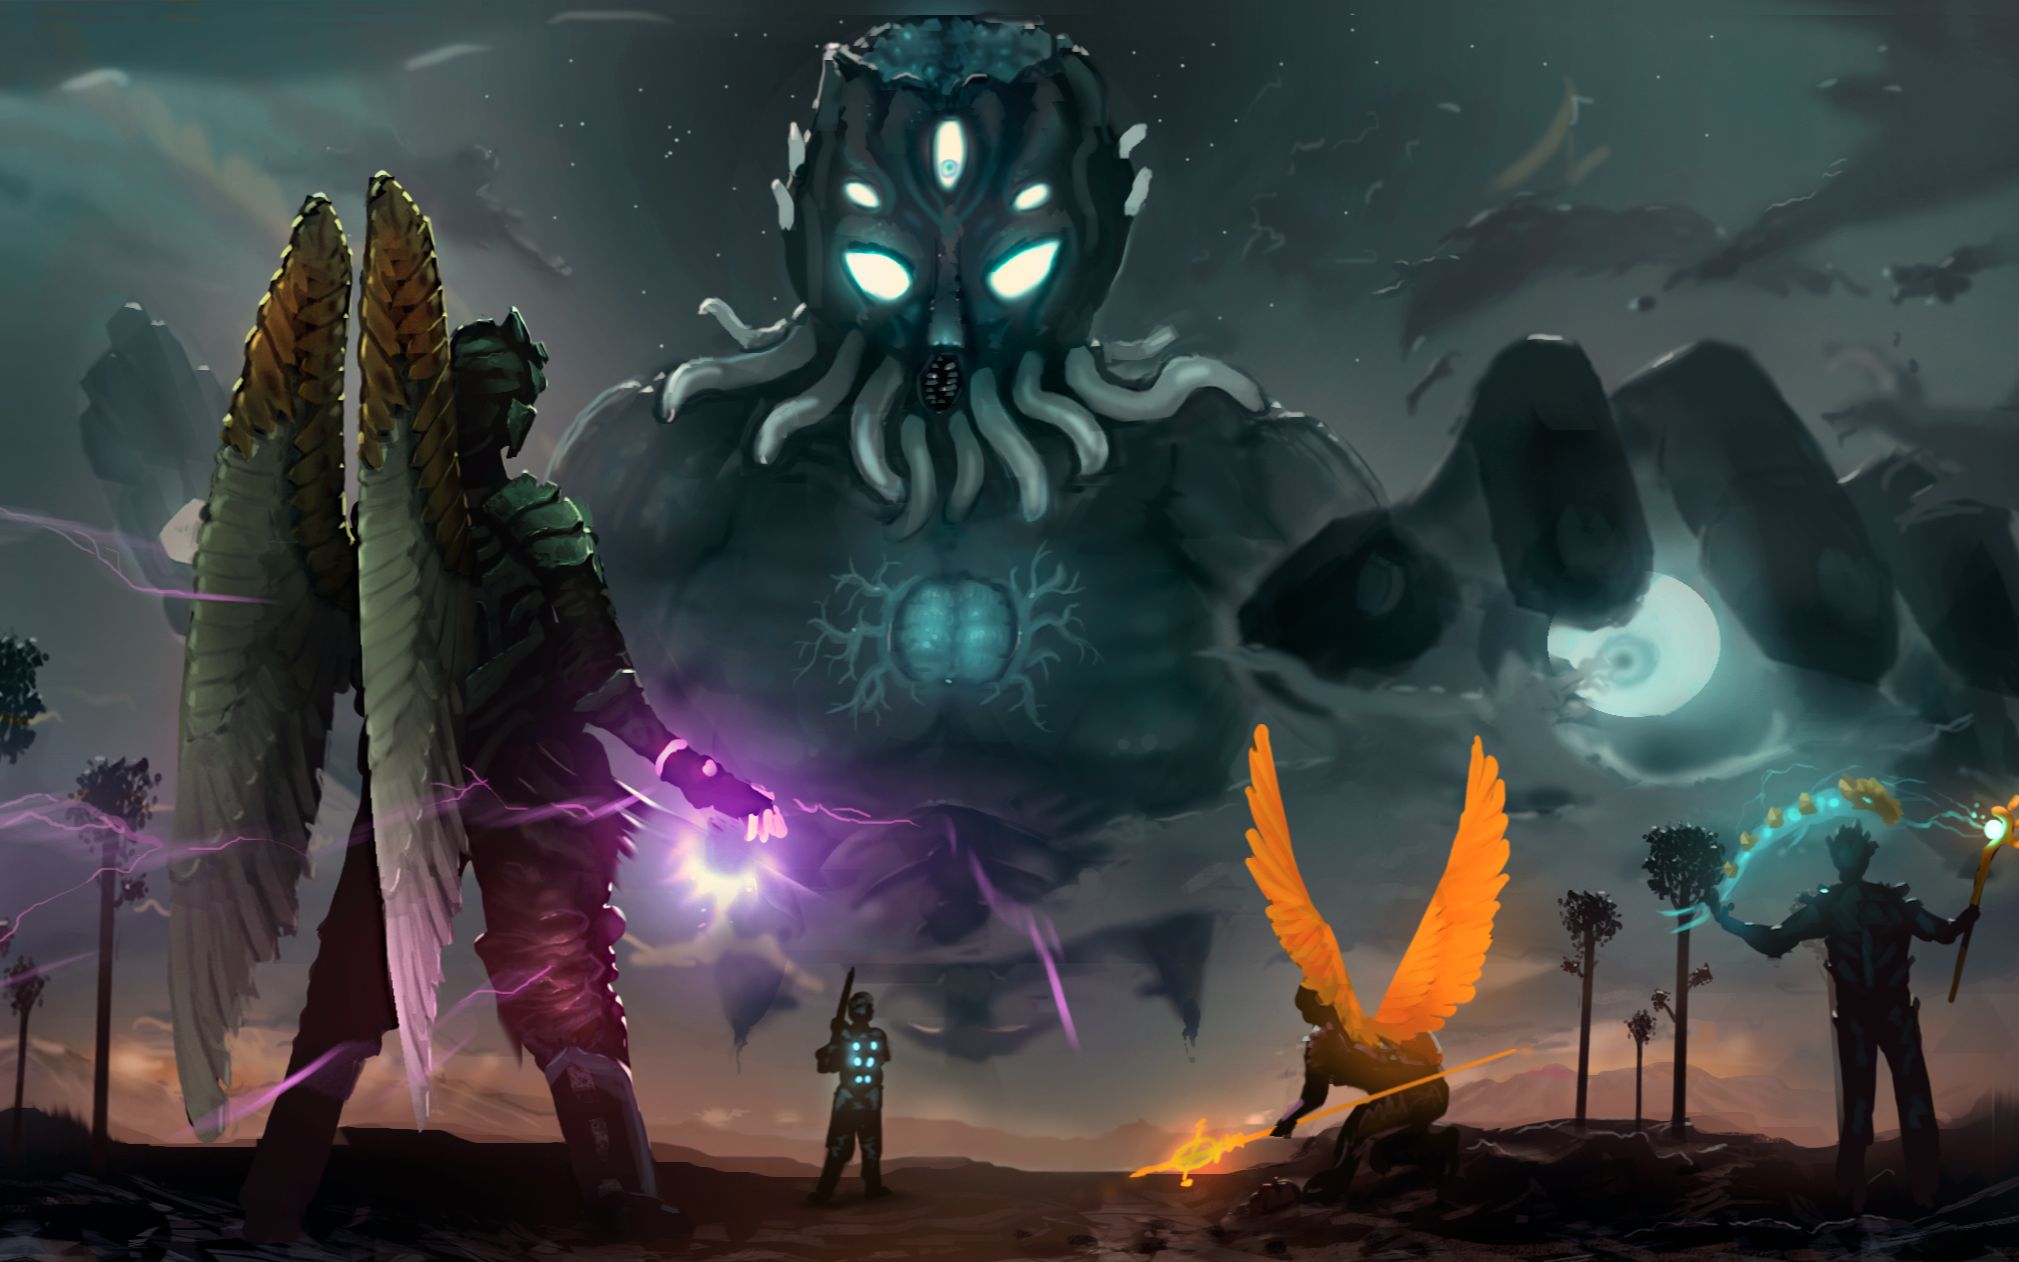 泰拉瑞亚噬魂之心模组魔神之子特战队与灾厄boss群激战的现场画面